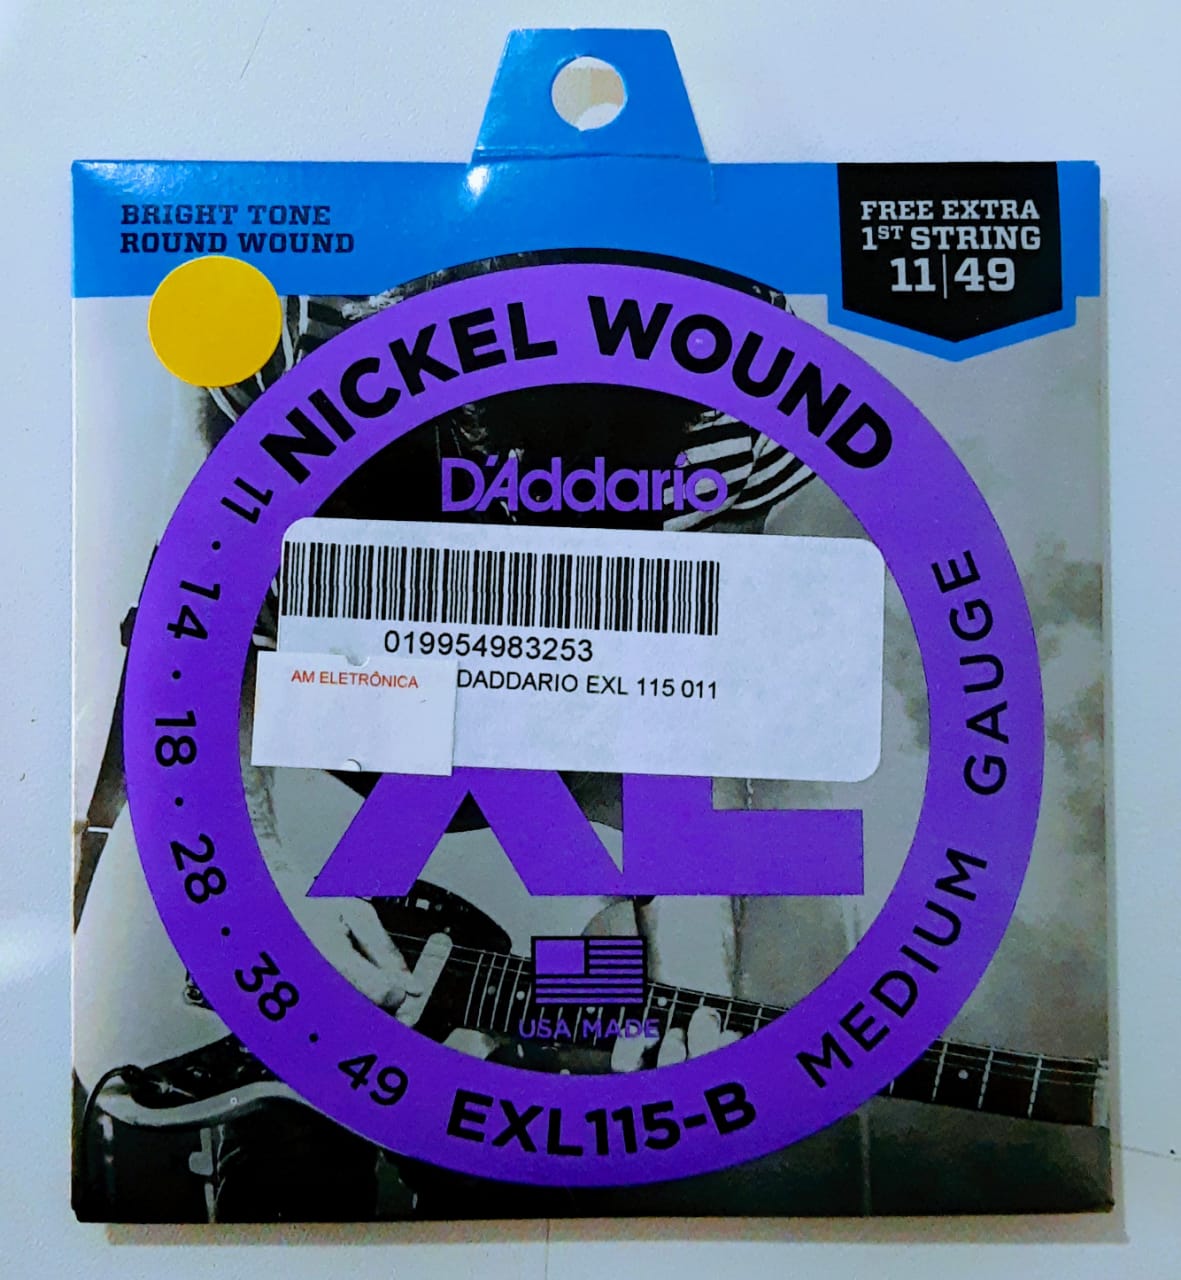 D'Addario Nickel Wound EXL115-B Guitarra 11-49 - DaCidadeShop